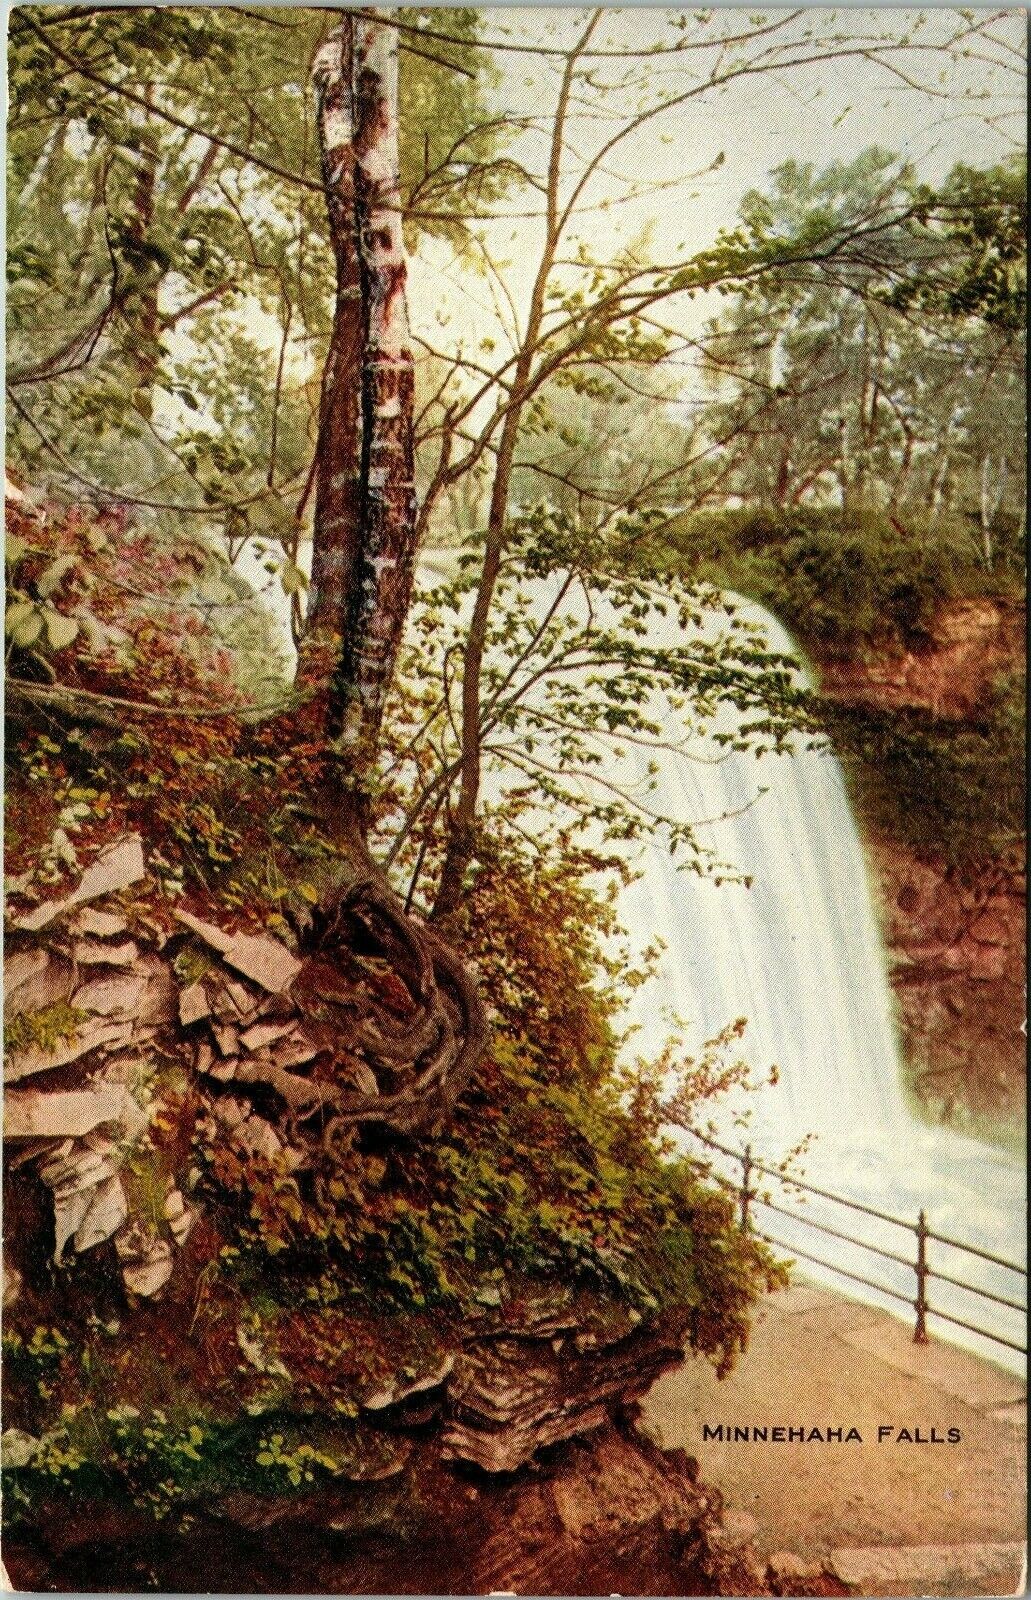 Minnehaha Falls Minnesota Minn 53\' Waterfall 1913 Vintage Postcard 